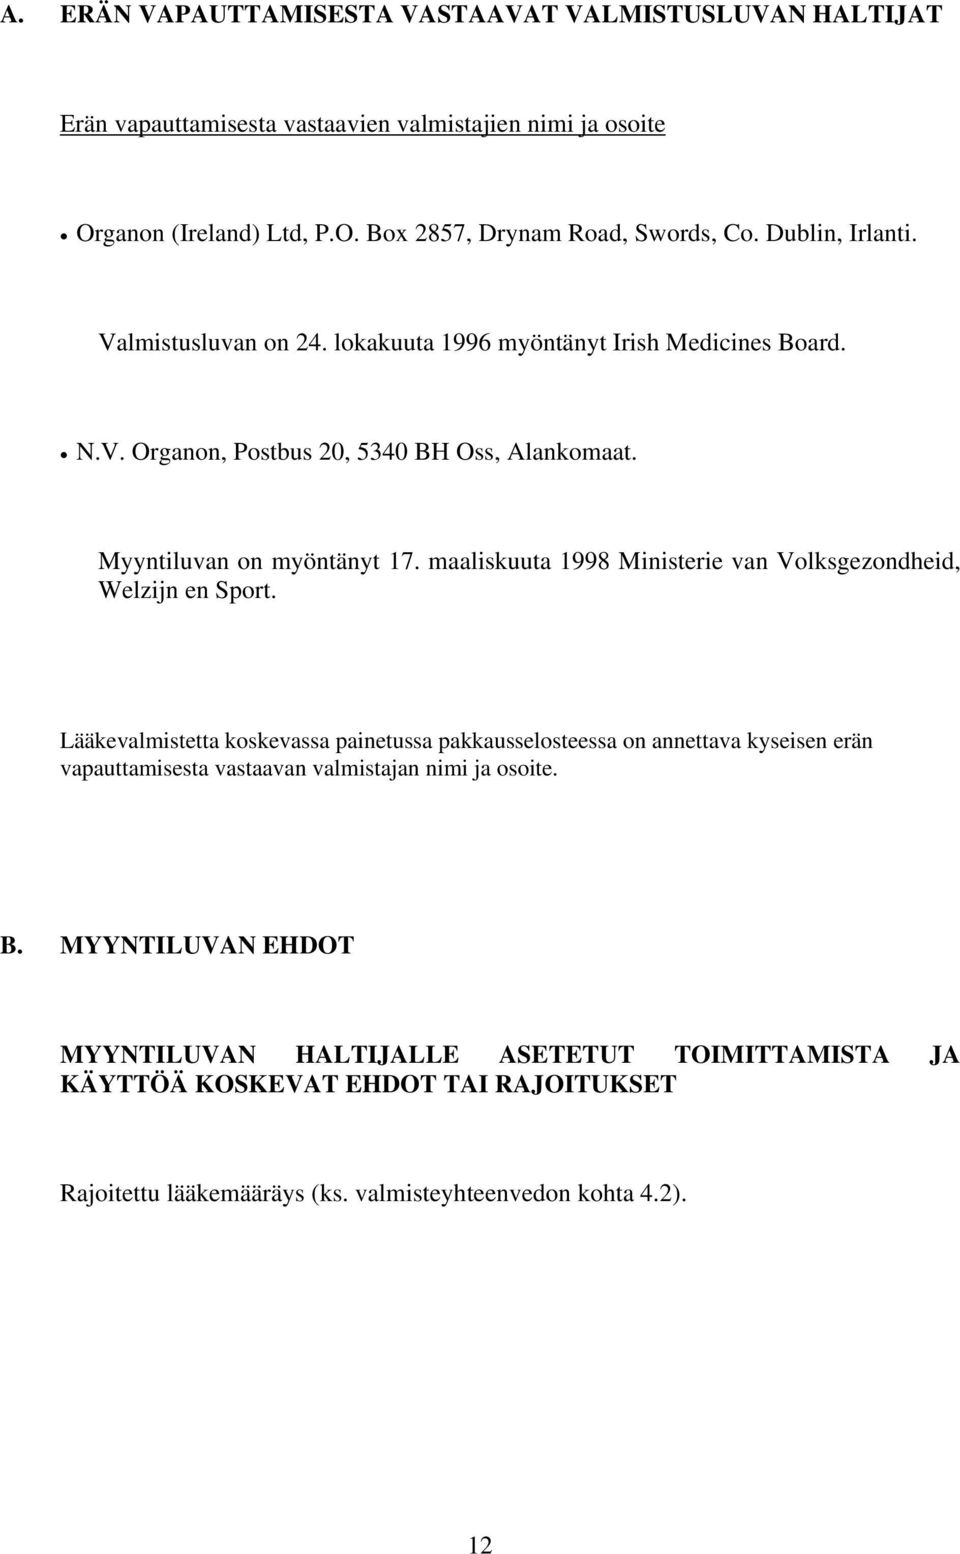 maaliskuuta 1998 Ministerie van Volksgezondheid, Welzijn en Sport.